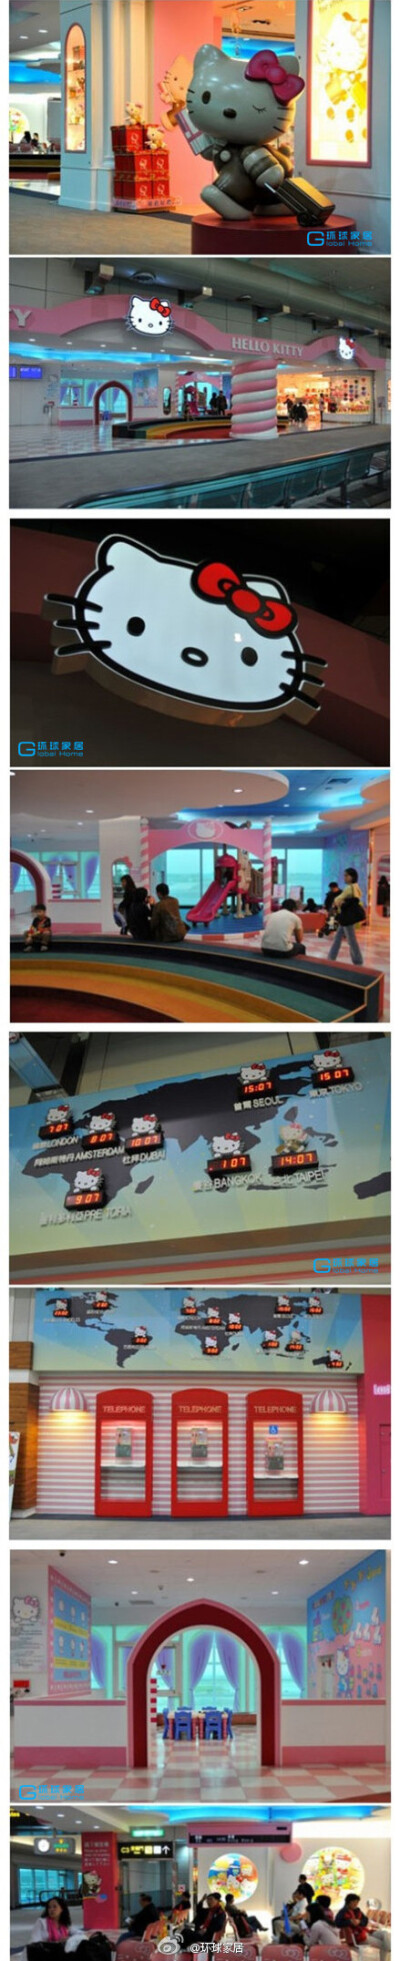 传说中的台湾Hello Kitty 机场候机室